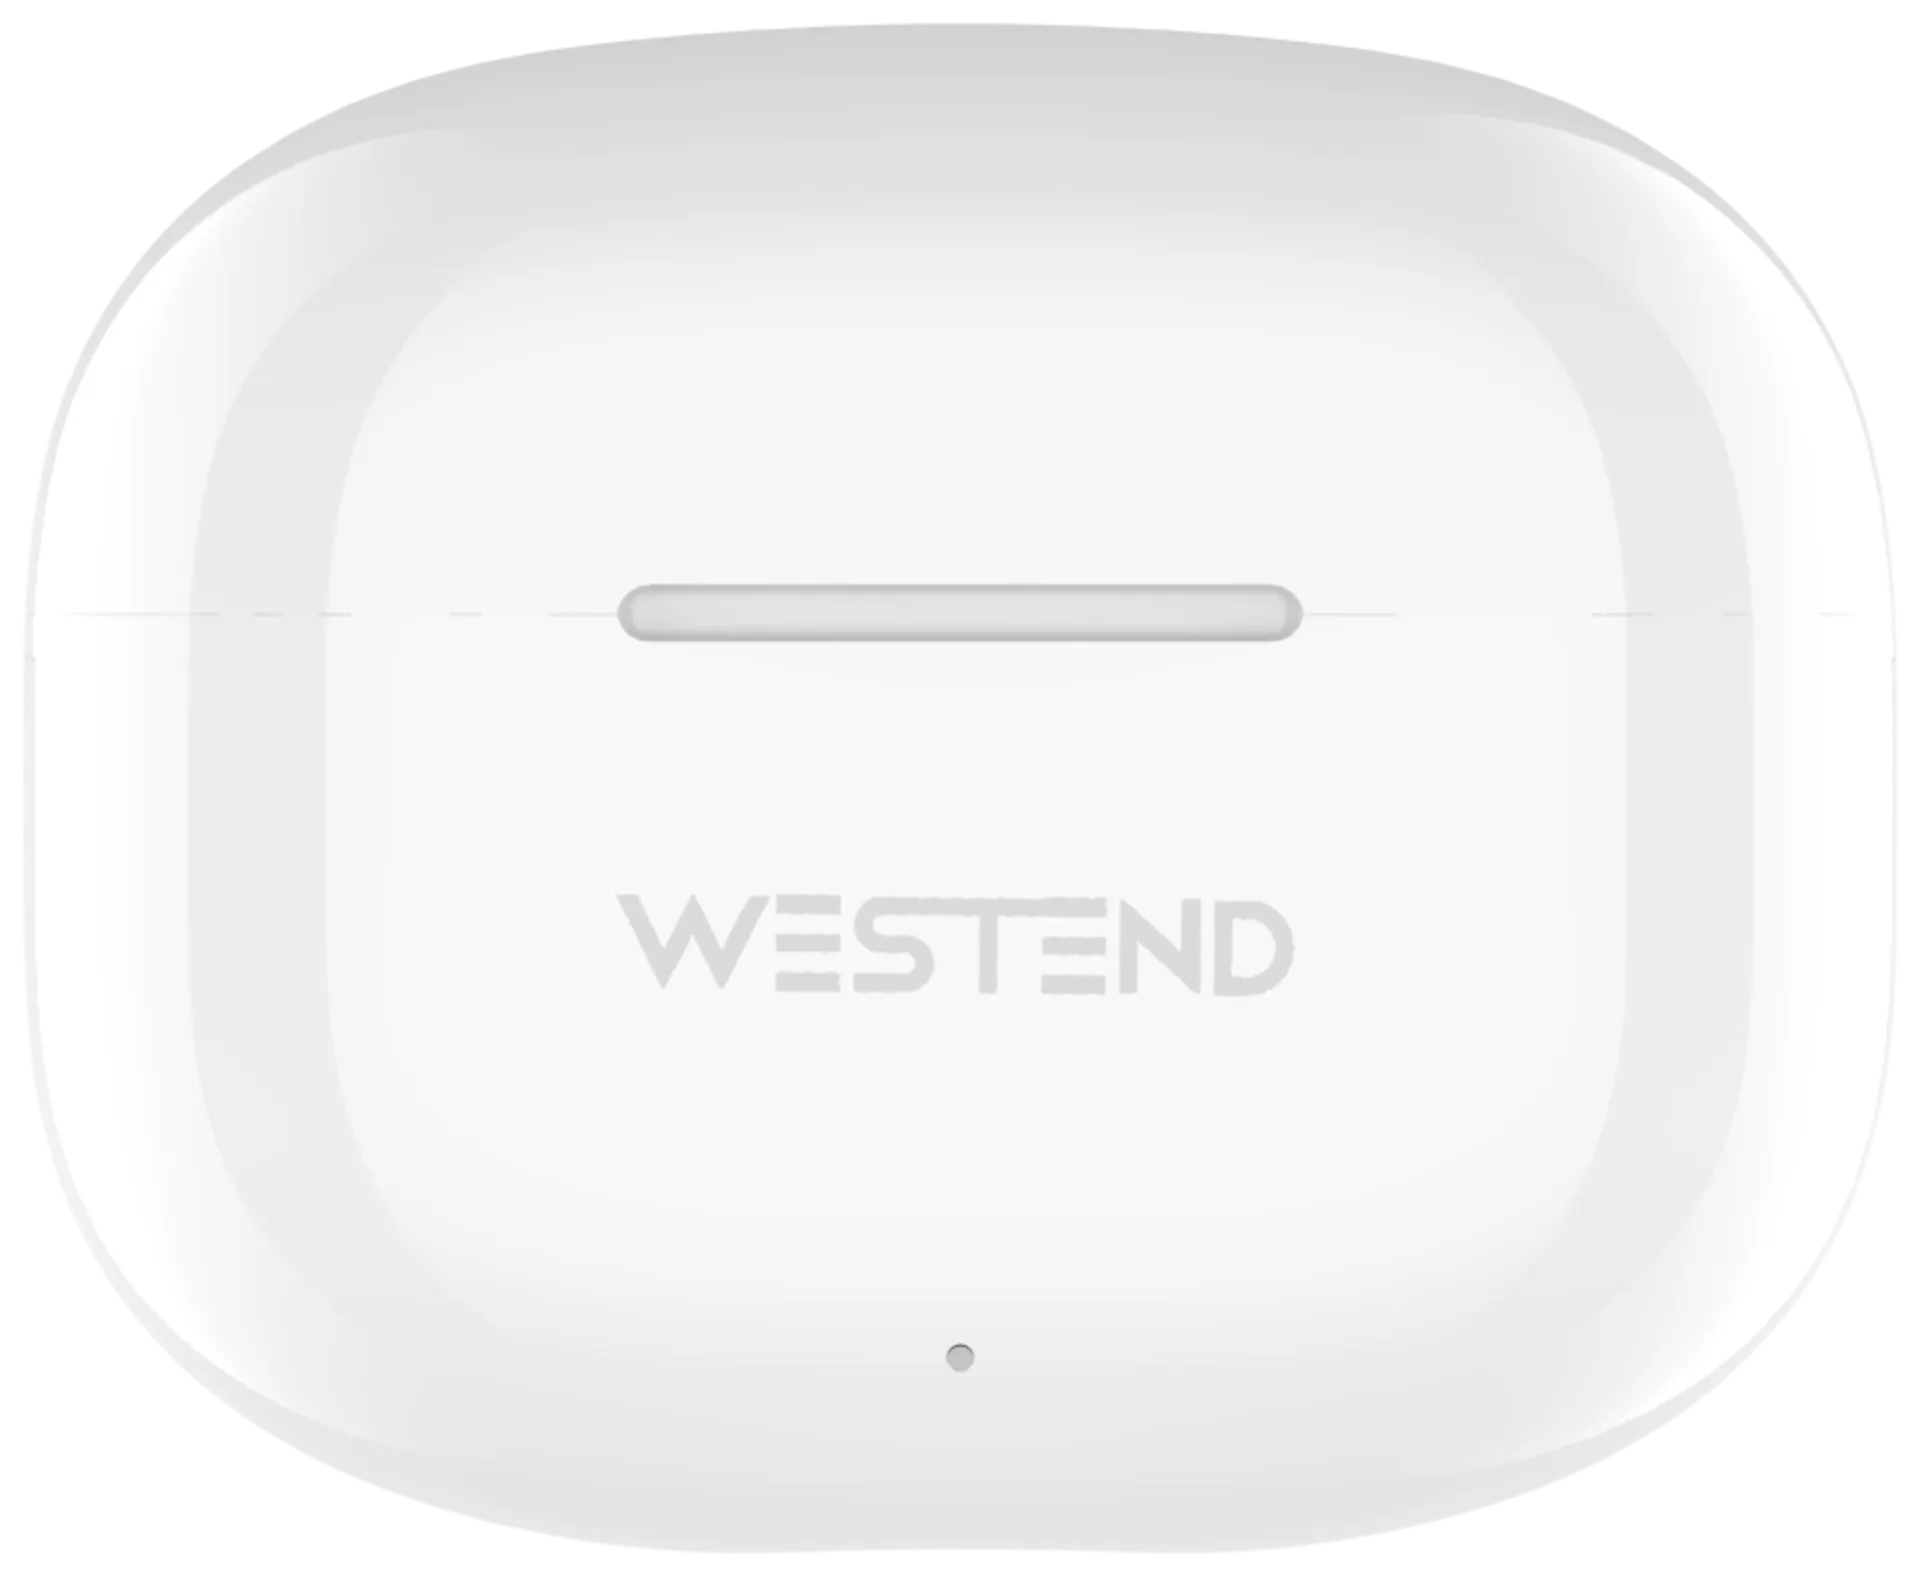 Westend Bluetooth vastamelunappikuulokkeet G70, valkoinen - 2